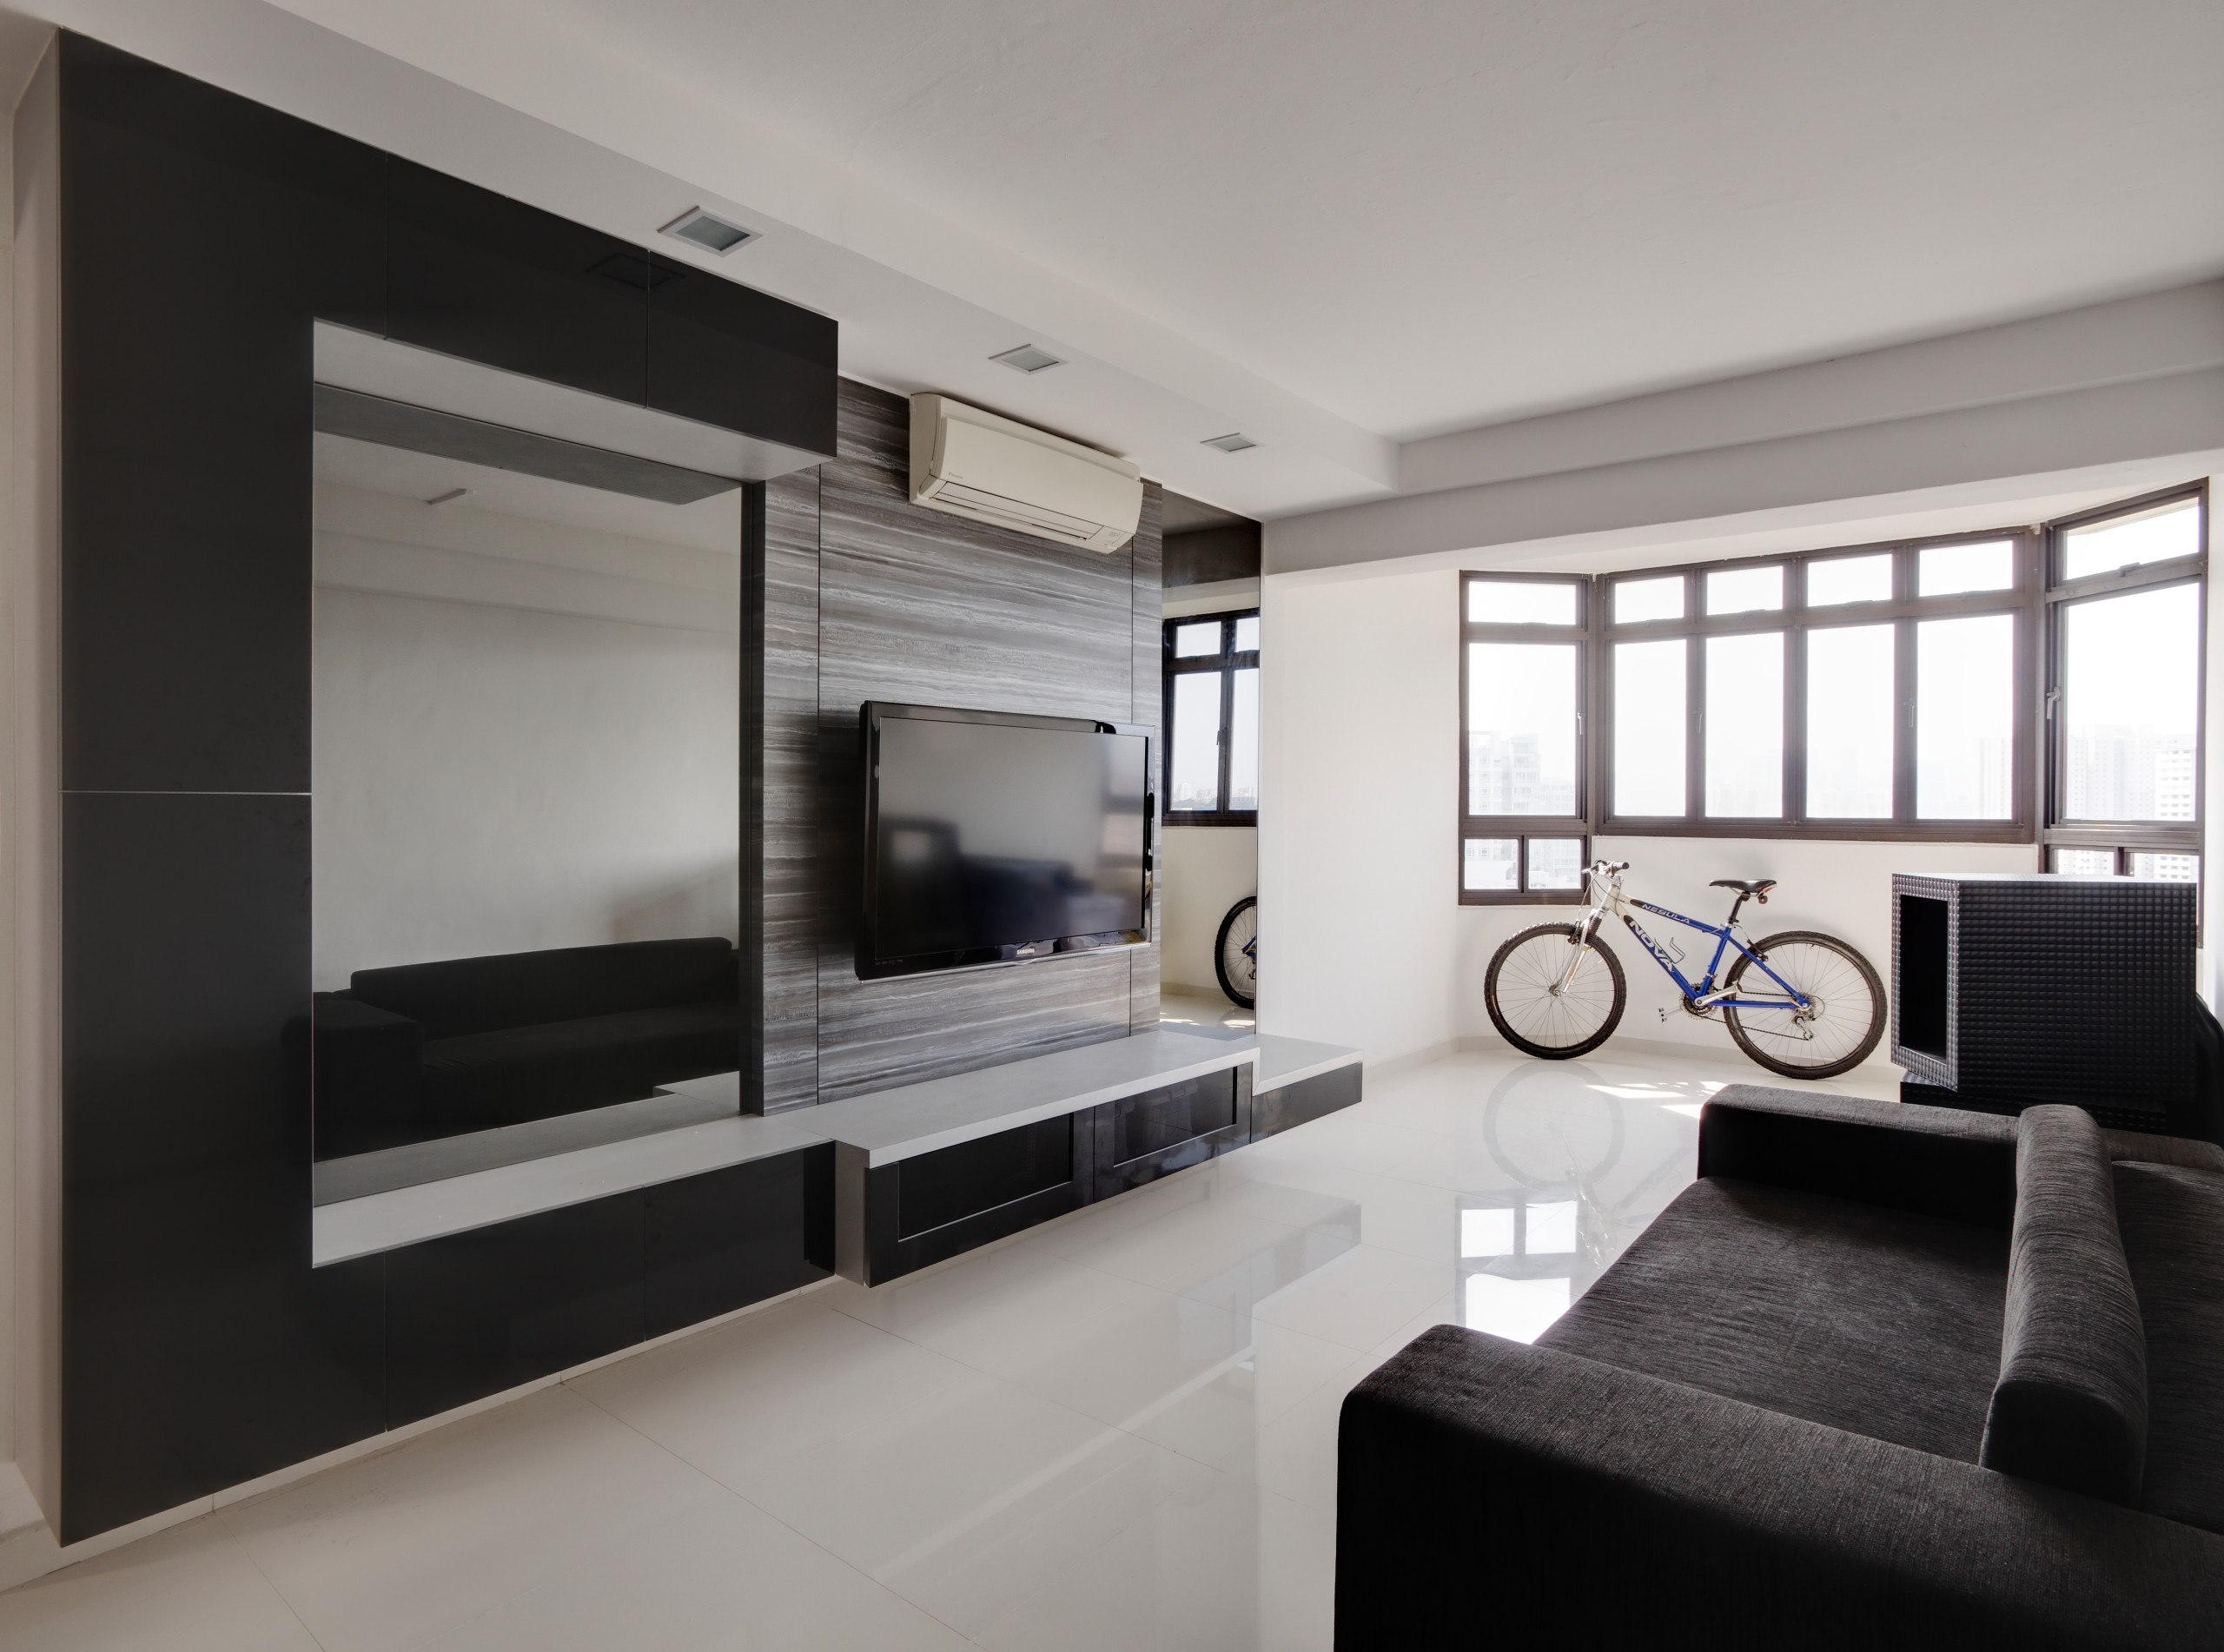 Sleek Minimalist Living Room Modern, Sleek Living Room Ideas